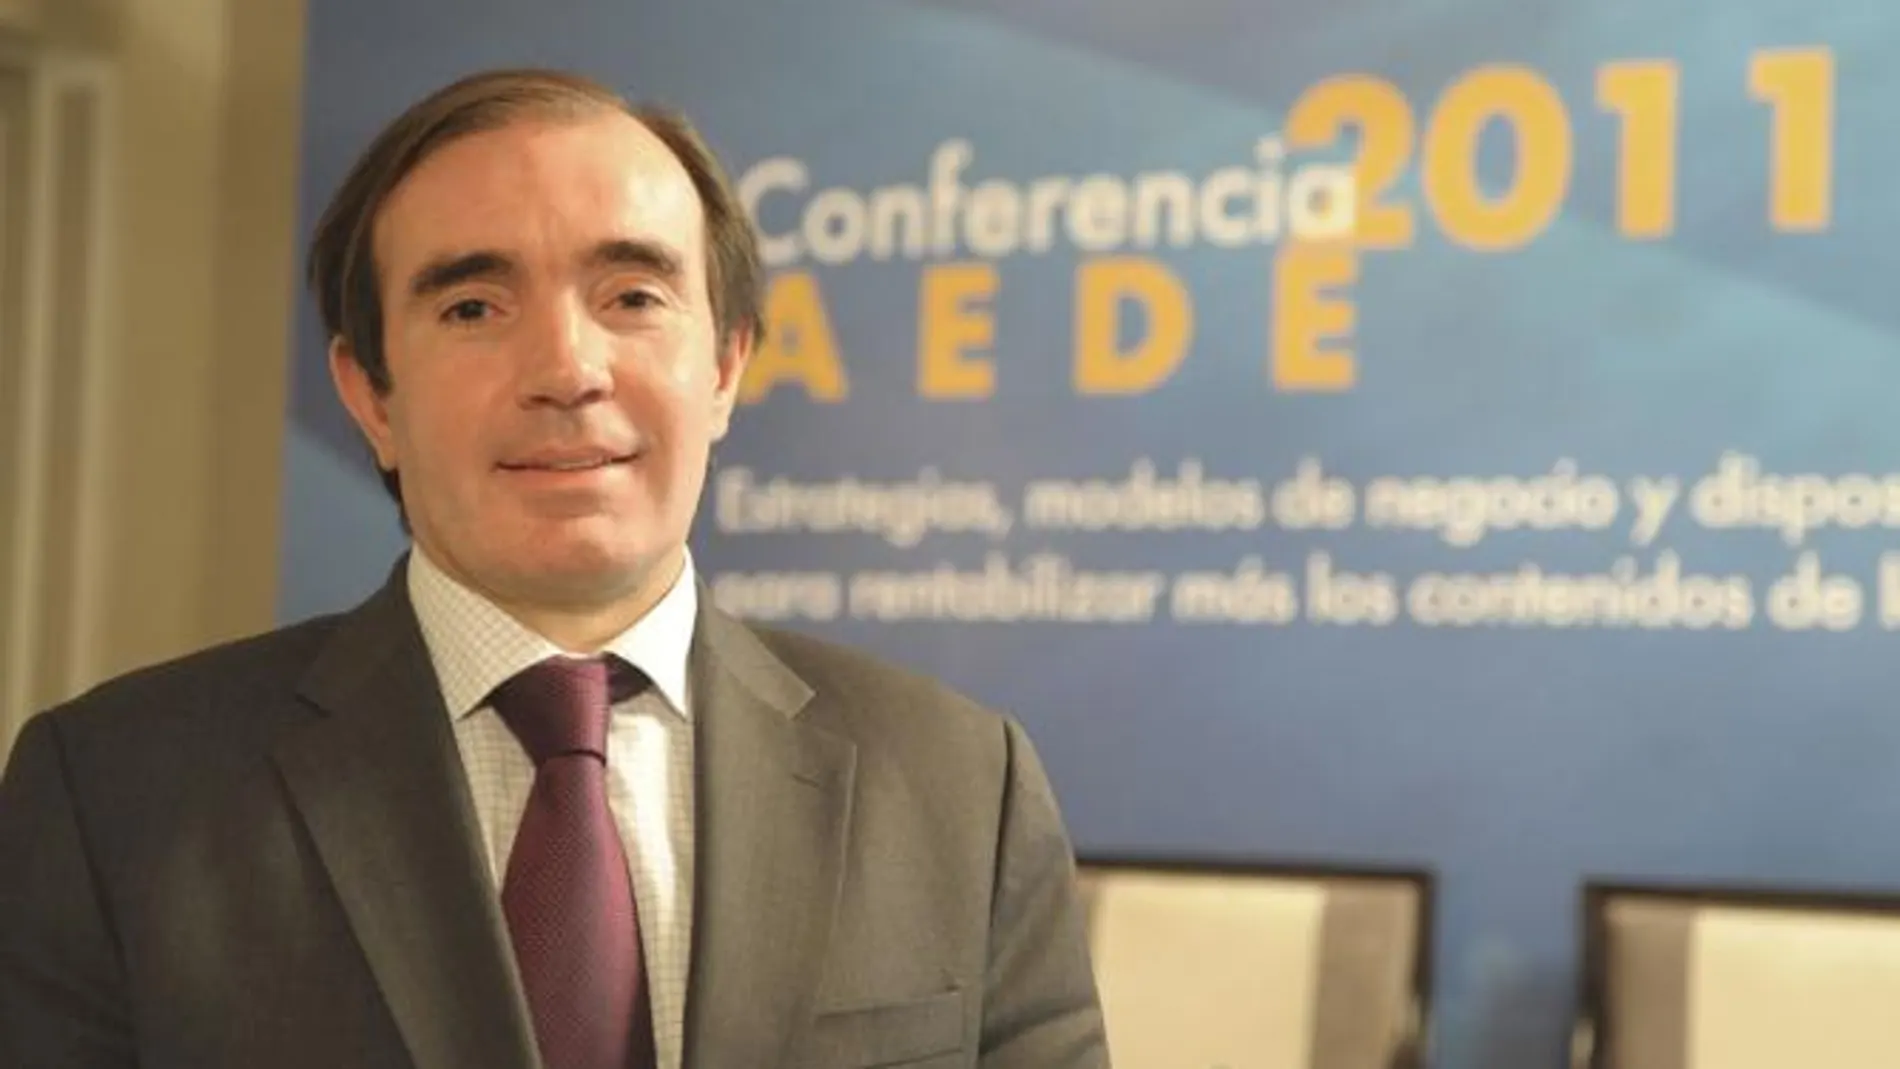 Conrado Carnal es el nuevo presidente de AEDE